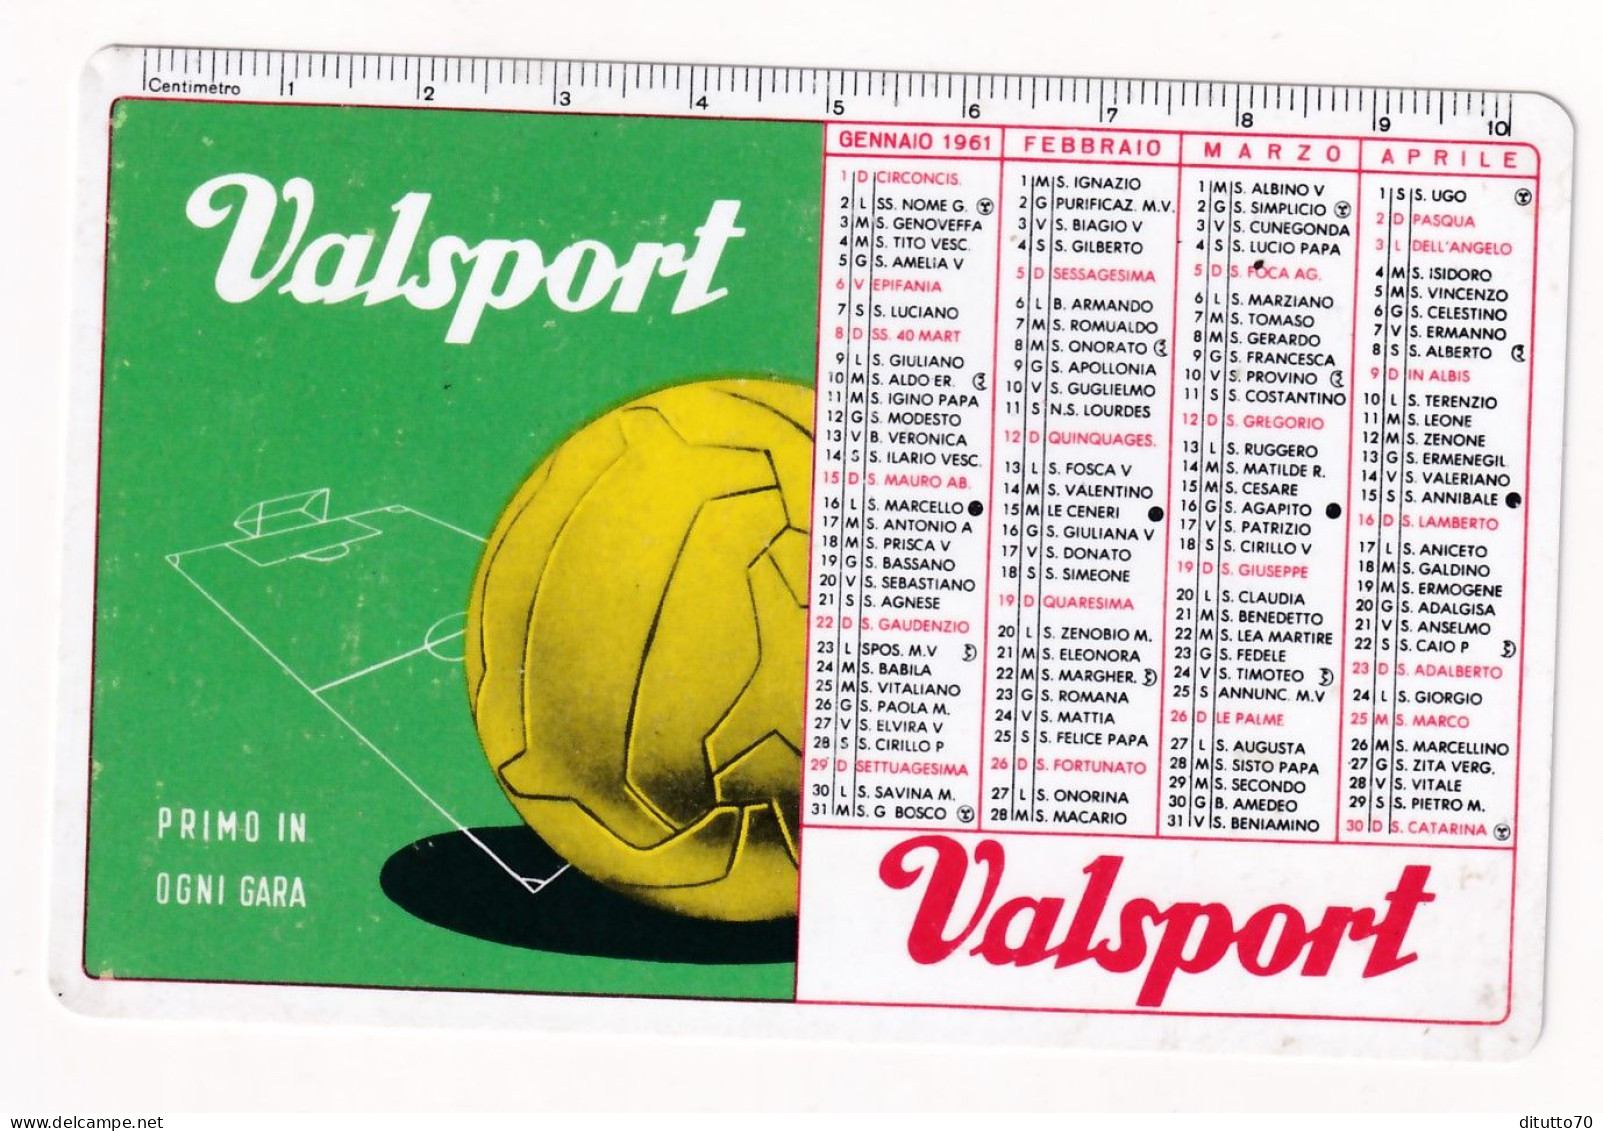 Calendarietto - Valsport - Palloni E Calzature - Anno 1961 - Formato Piccolo : 1961-70